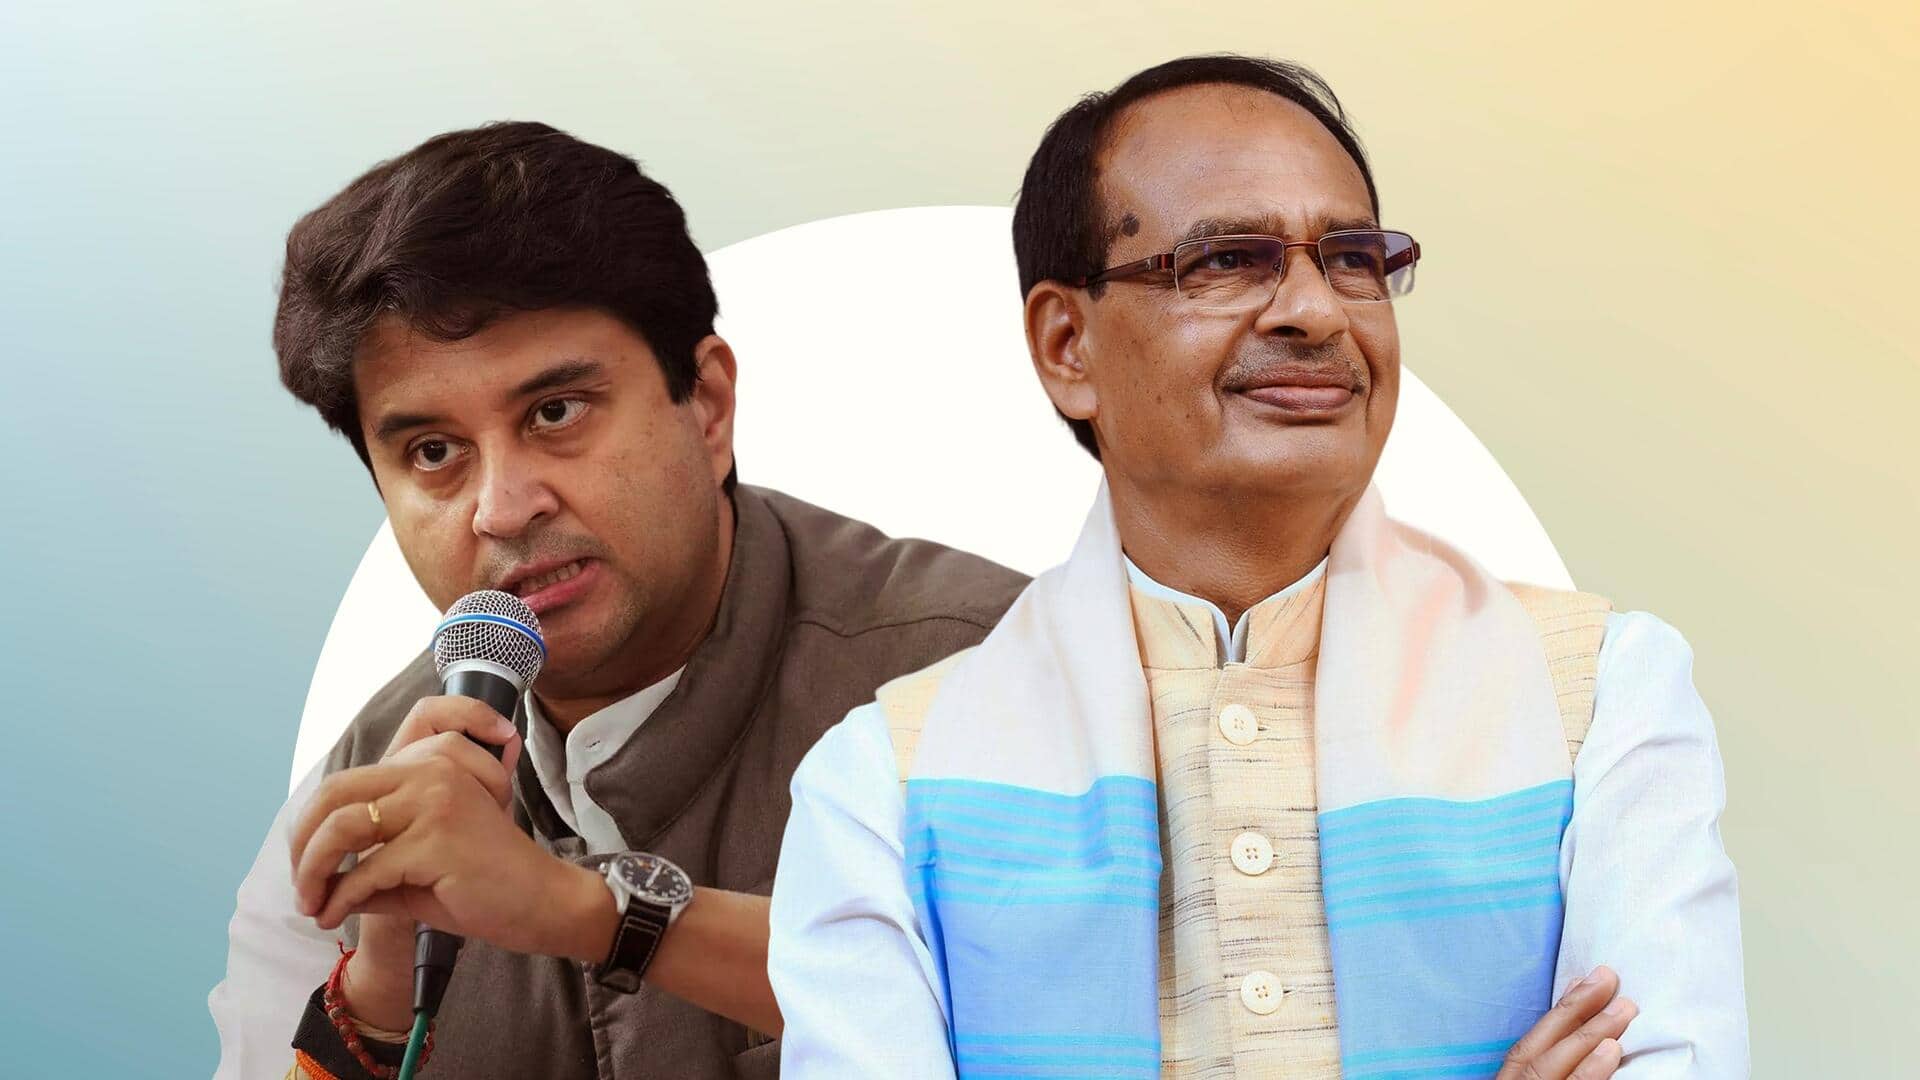 मध्य प्रदेश चुनाव: ज्योतिरादित्य सिंधिया की भूमिका और उनके भाजपा में आने से क्या असर पड़ेगा? 